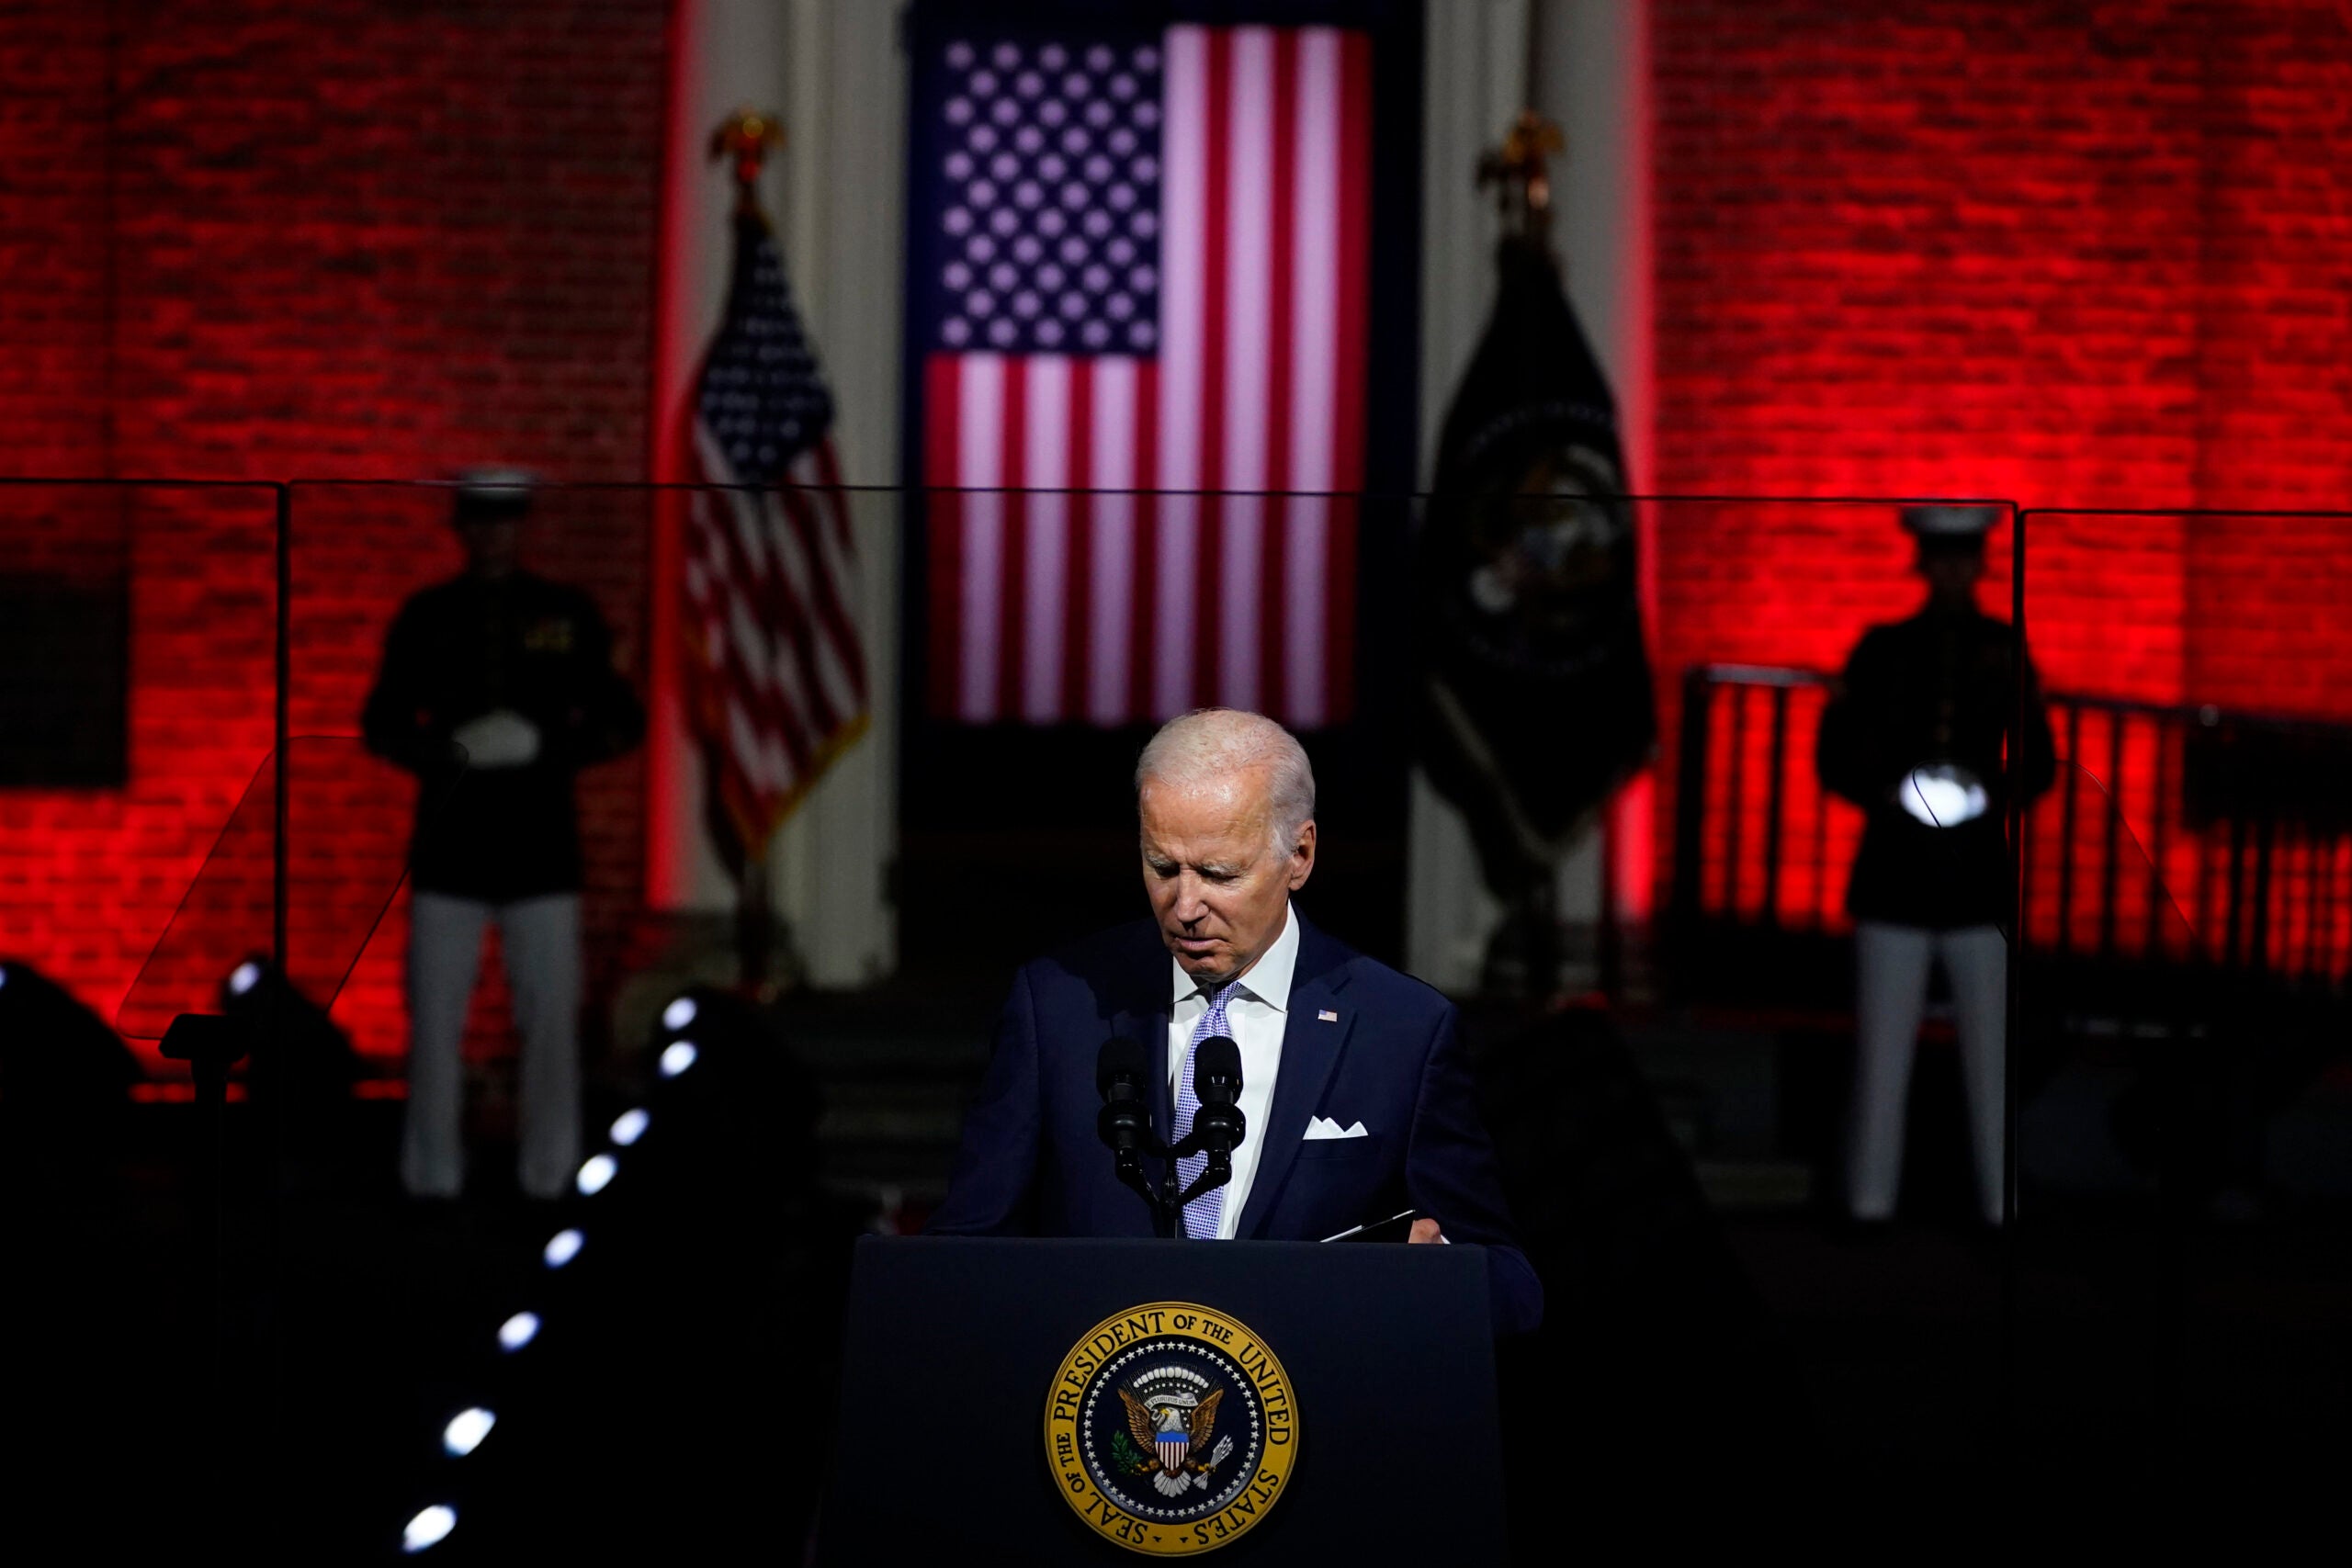 President Joe Biden closes his binder as he finishes speaking outside Independence Hall, Thursday, Sept. 1, 2022, in Philadelphia. (AP Photo/Matt Slocum)